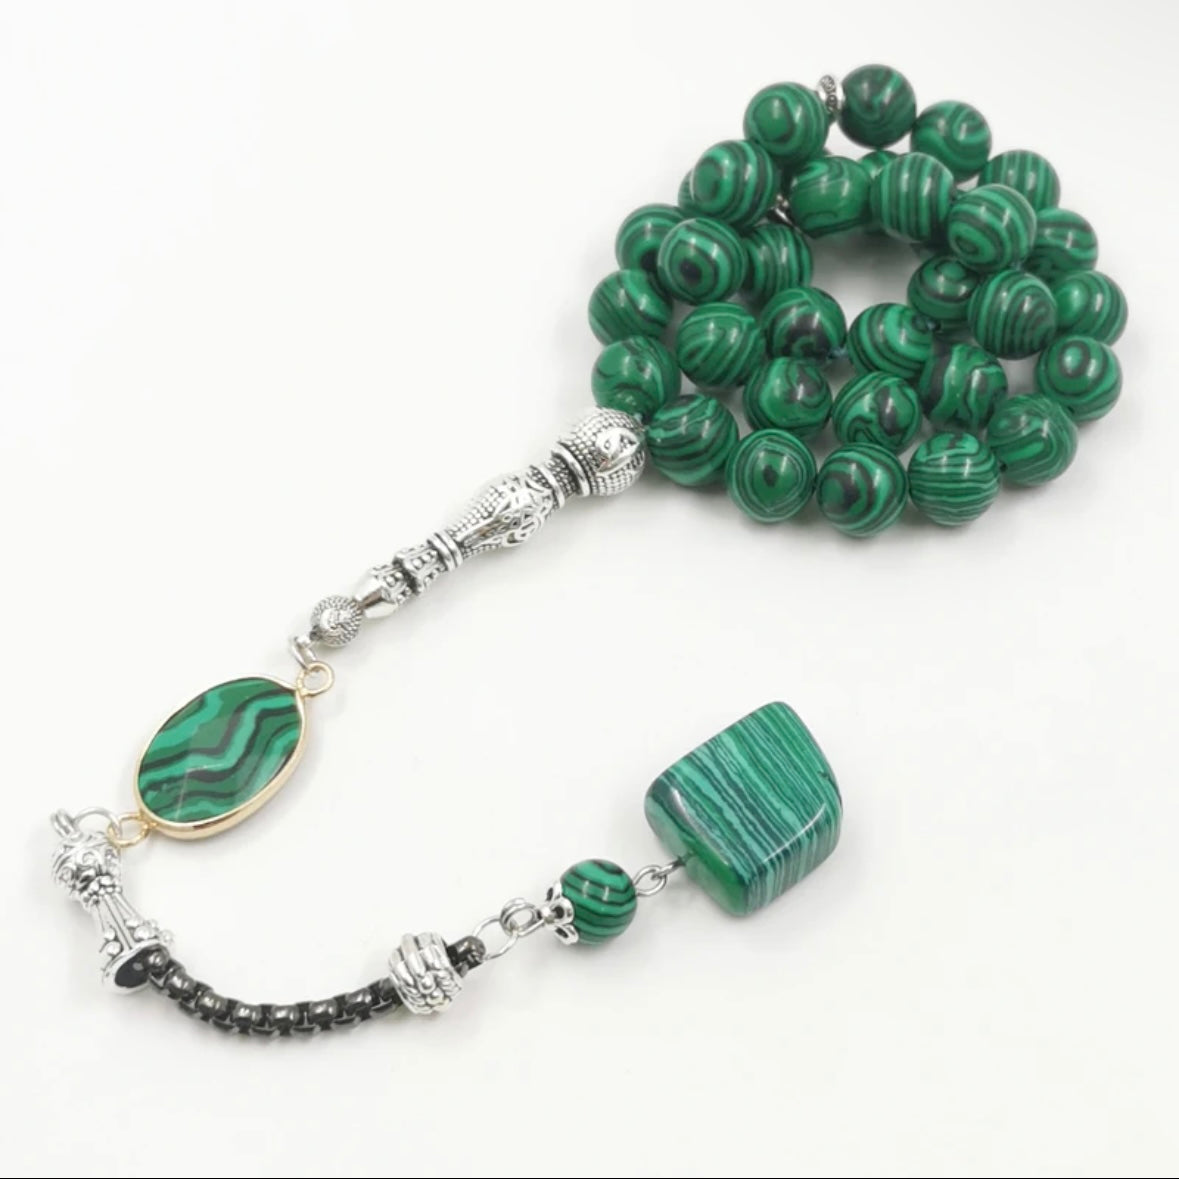 Handmade natural malachite stone prayer beads